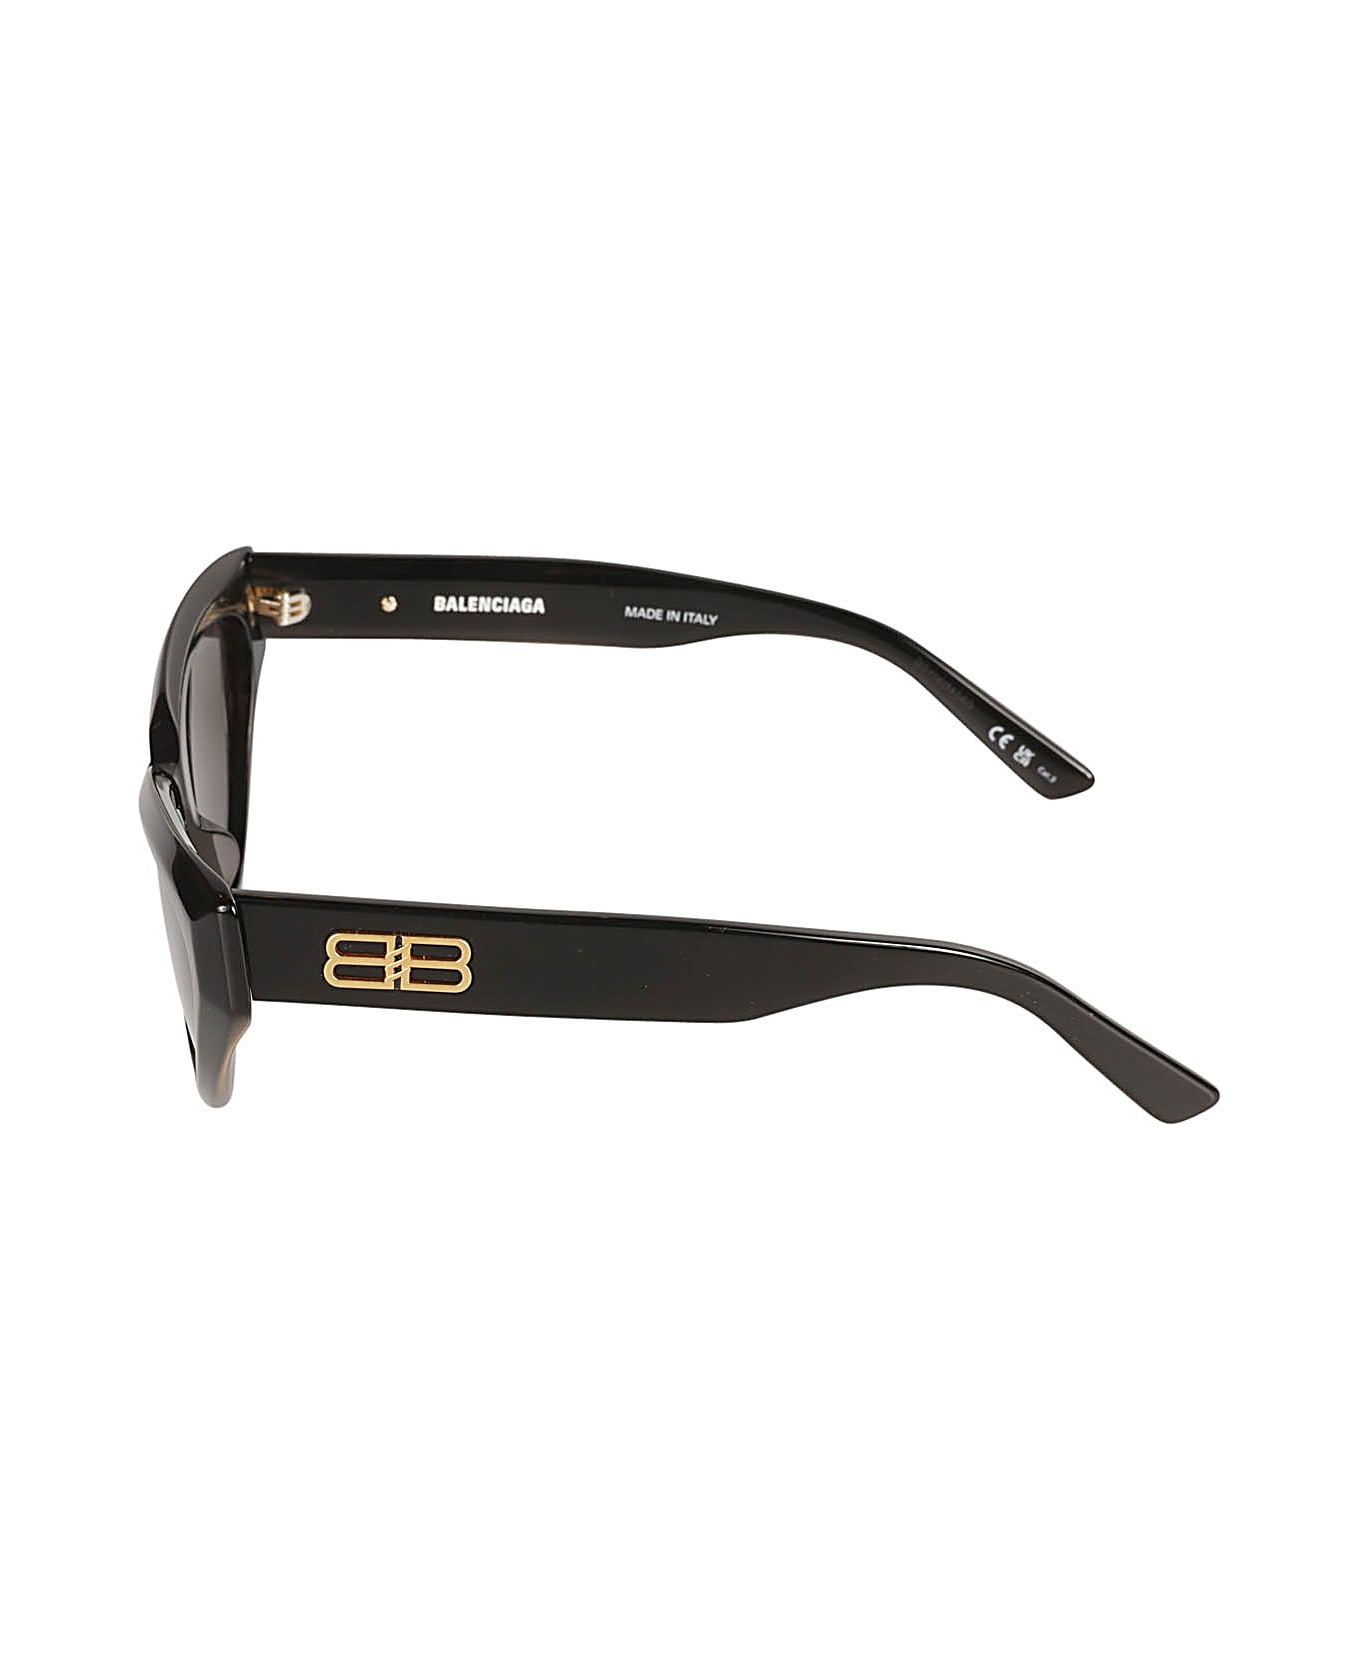 Balenciaga Eyewear Bb Plaque Cat Eye Frame Glasses - Black/Grey